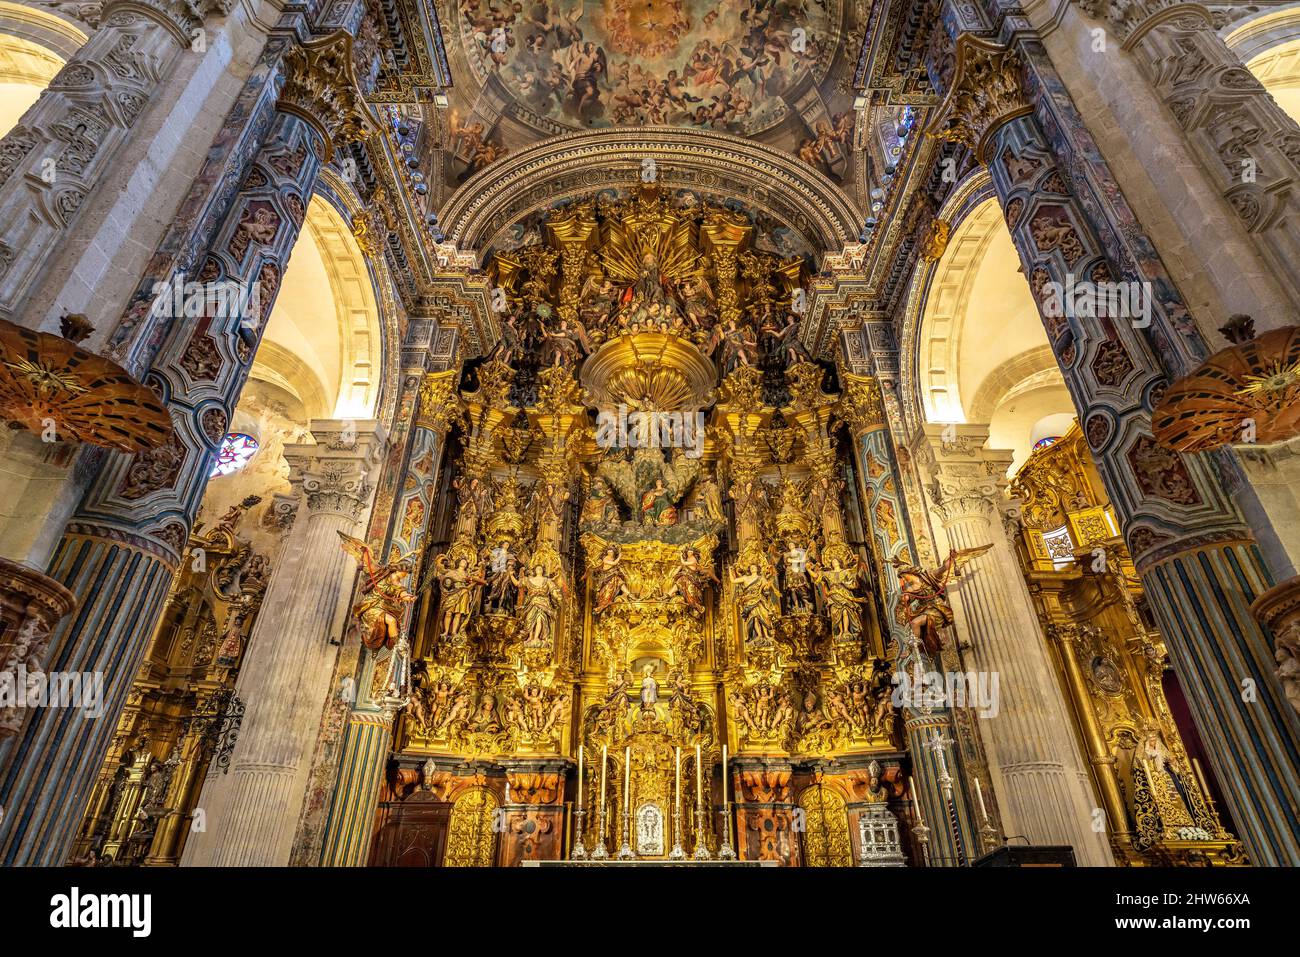 Altar der Kirche Iglesia del Salvador, Sevilla, Andalusien, Spanien  |  Iglesia del Salvador altar, Seville, Andalusia, Spain Stock Photo